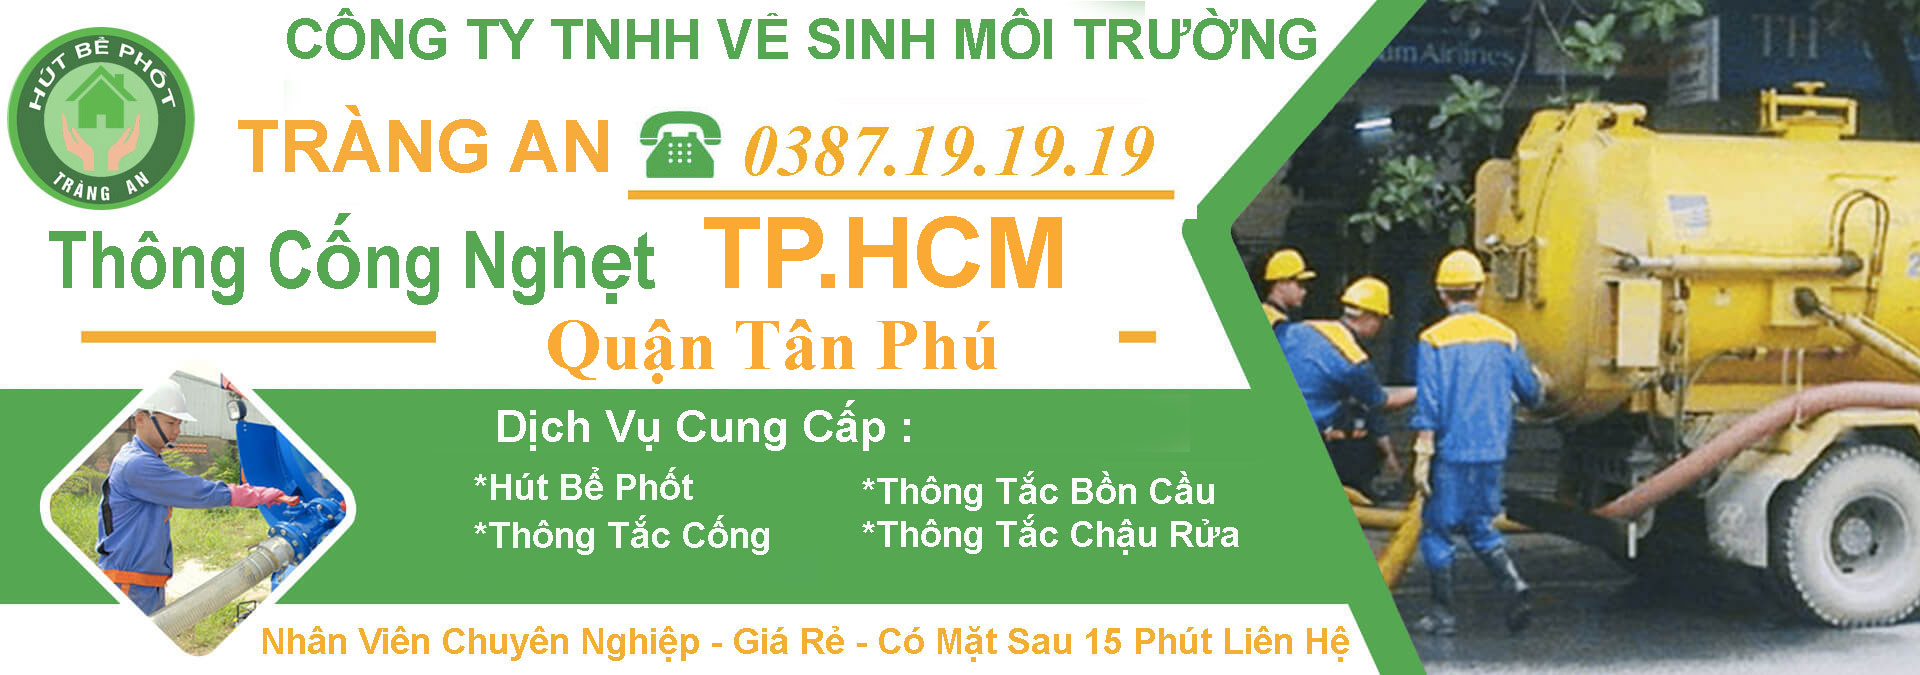 Thong Cong Nghet Tphcm Quan Tan Phu